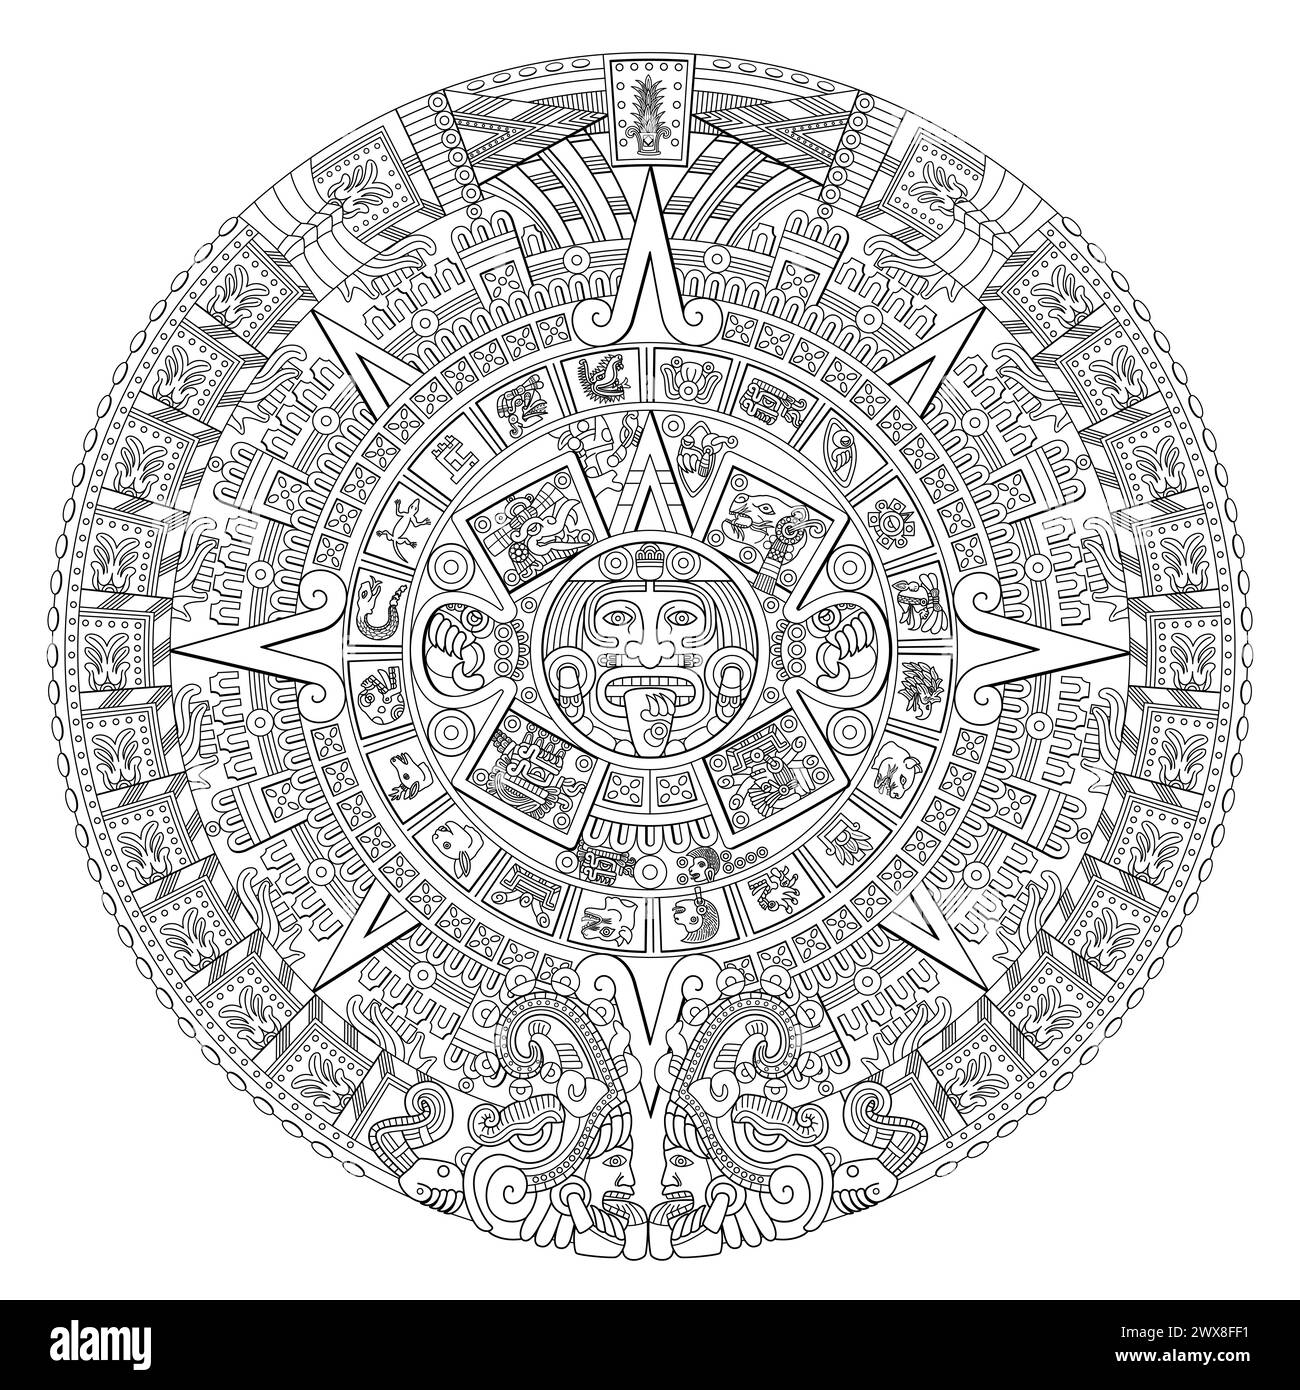 Pietra solare azteca. Al centro del disco appare il glifo chiamato movimento con la faccia della divinità solare Tonatiuh, circondato dai segni di 20 giorni. Foto Stock